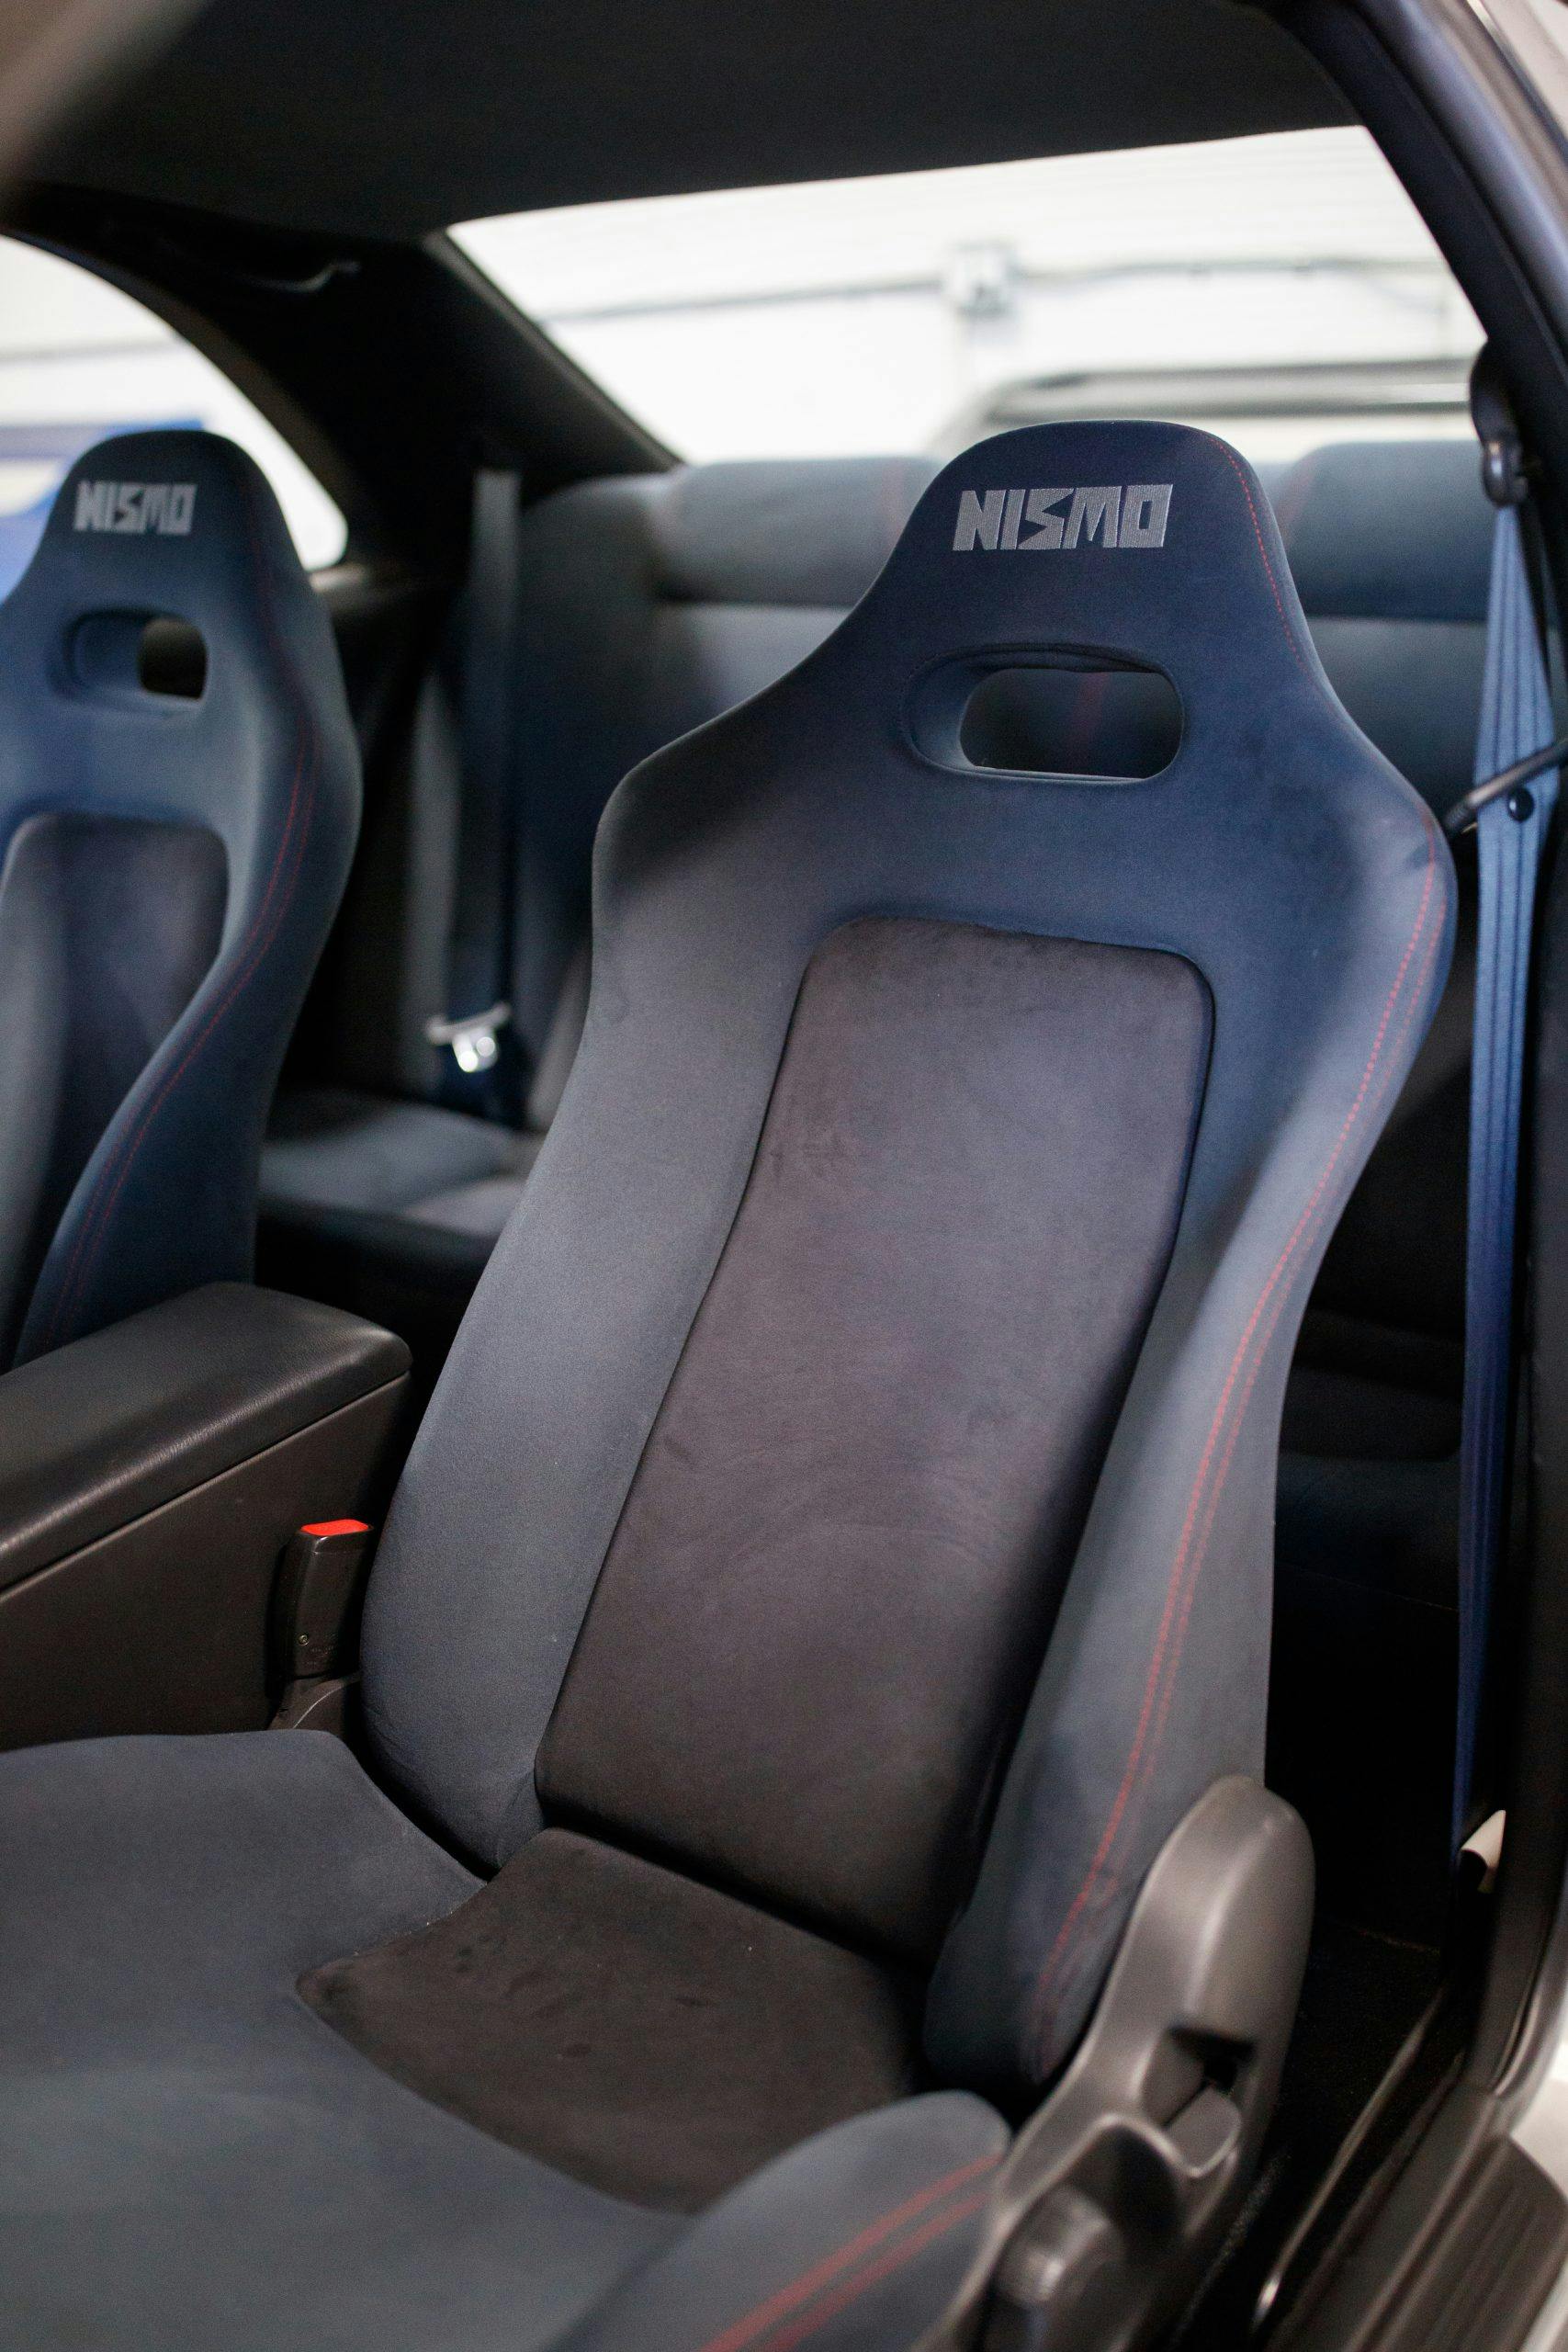 T-R NISMO 400R interior seat